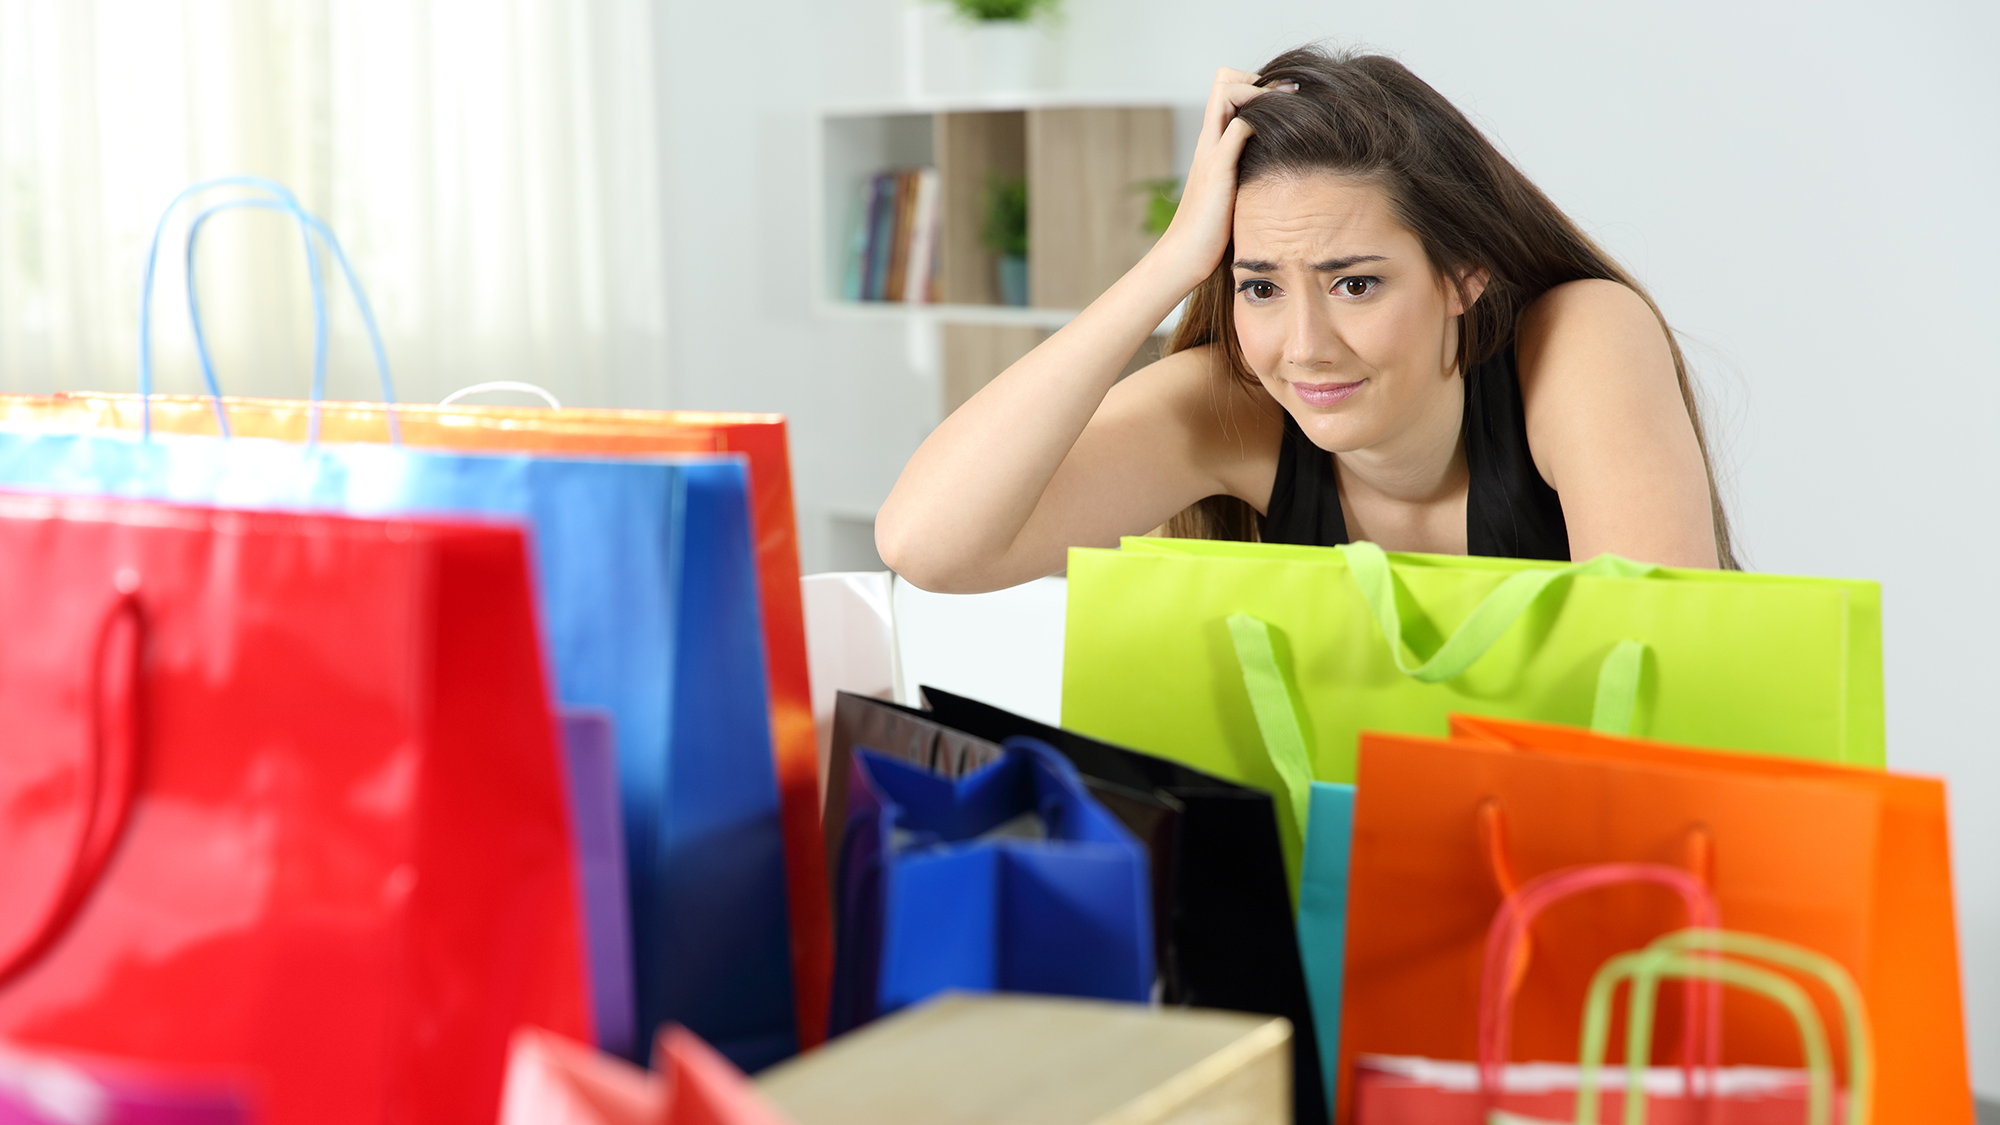 Frau sitzt verzweifelt vor vielen Einkaufstaschen